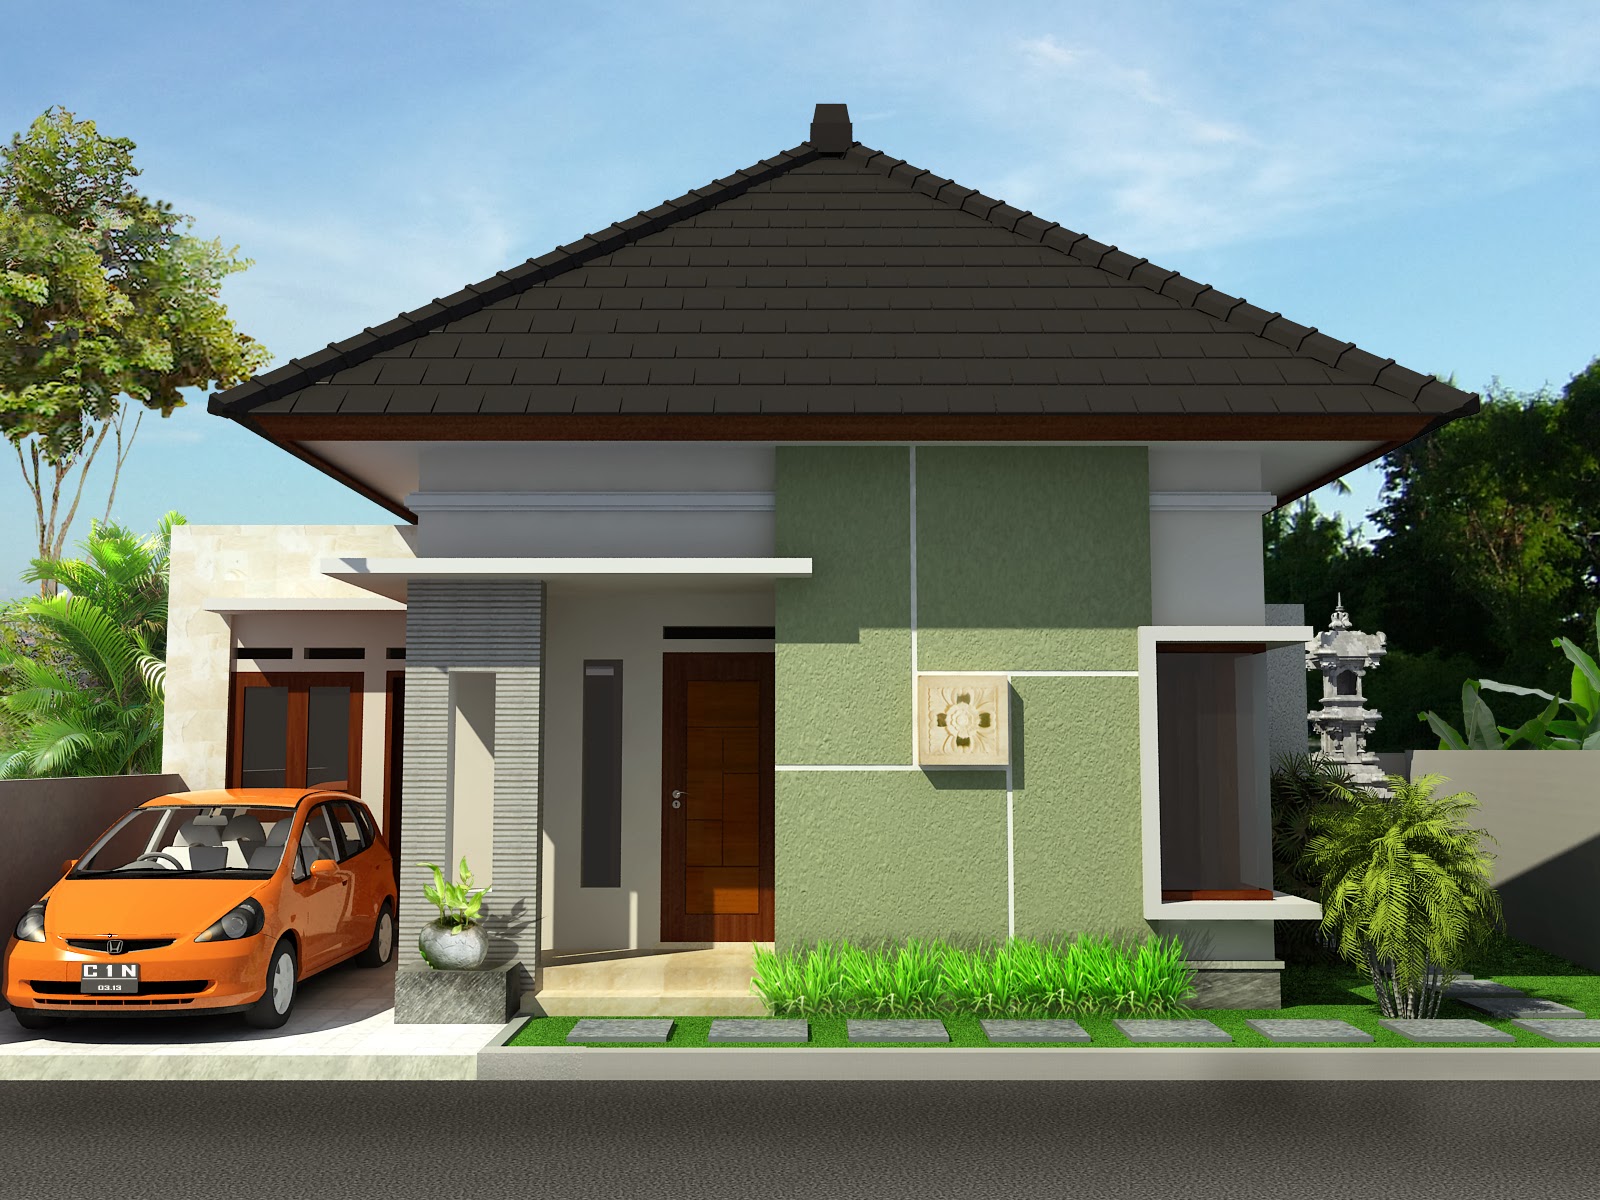  Desain Rumah Minimalis 1 Lantai Sederhana Terbaru 2020